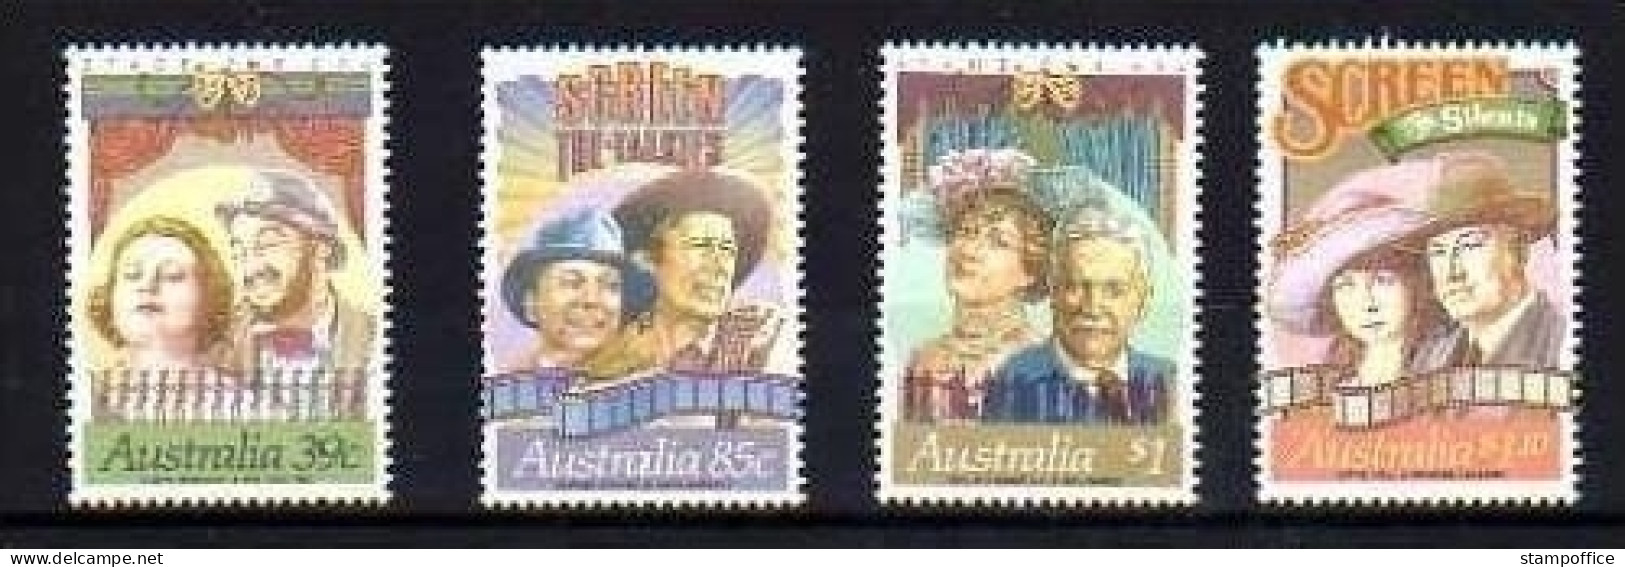 AUSTRALIEN MI-NR. 1157-1160 POSTFRISCH(MINT) SCREEN - SCHAUSPIELER - Mint Stamps